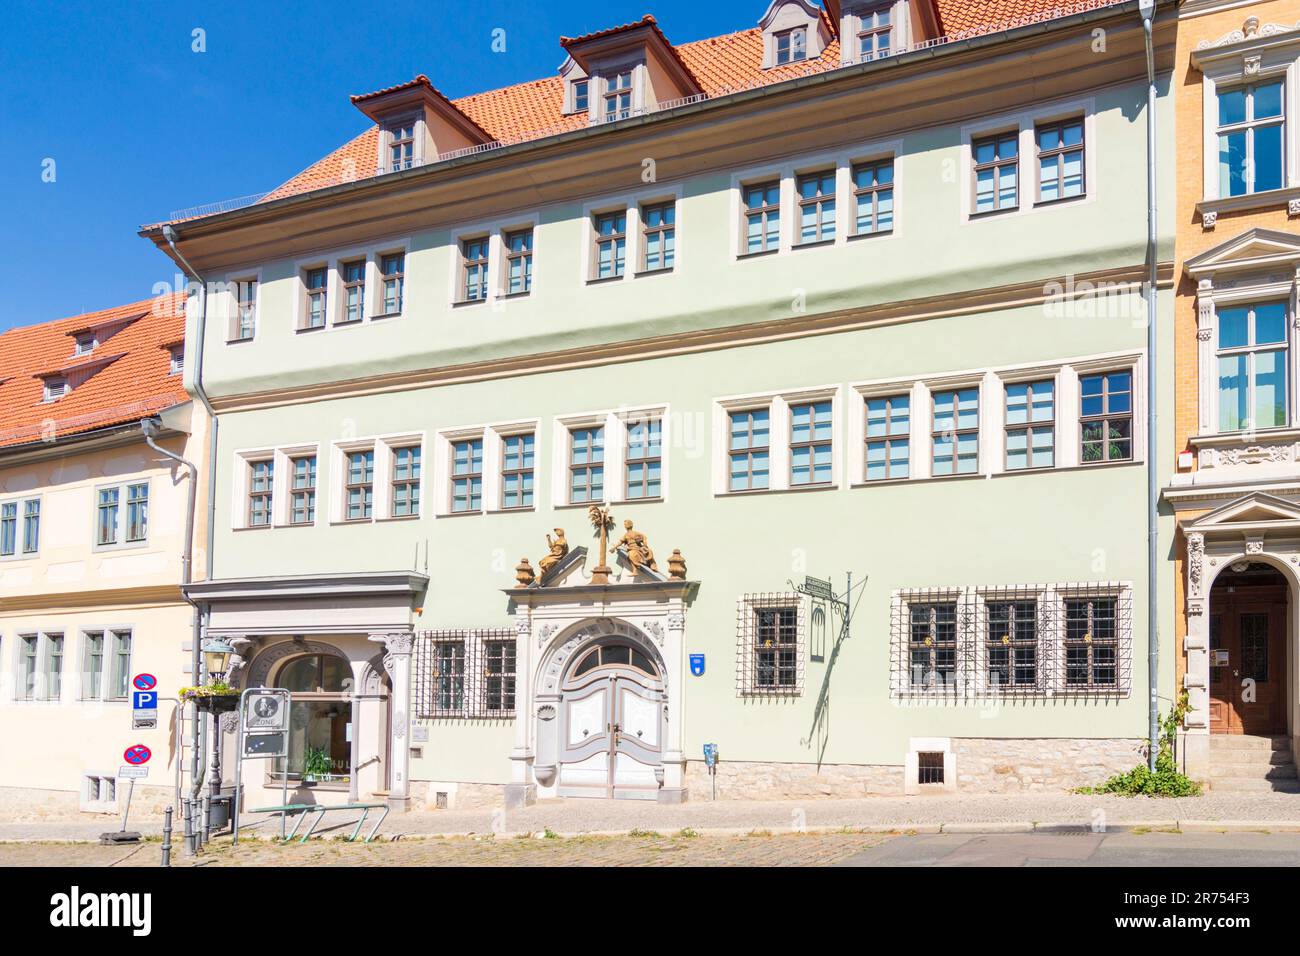 Arnstadt, maison Haus zum Palmenbaum en Thuringe, Allemagne Banque D'Images